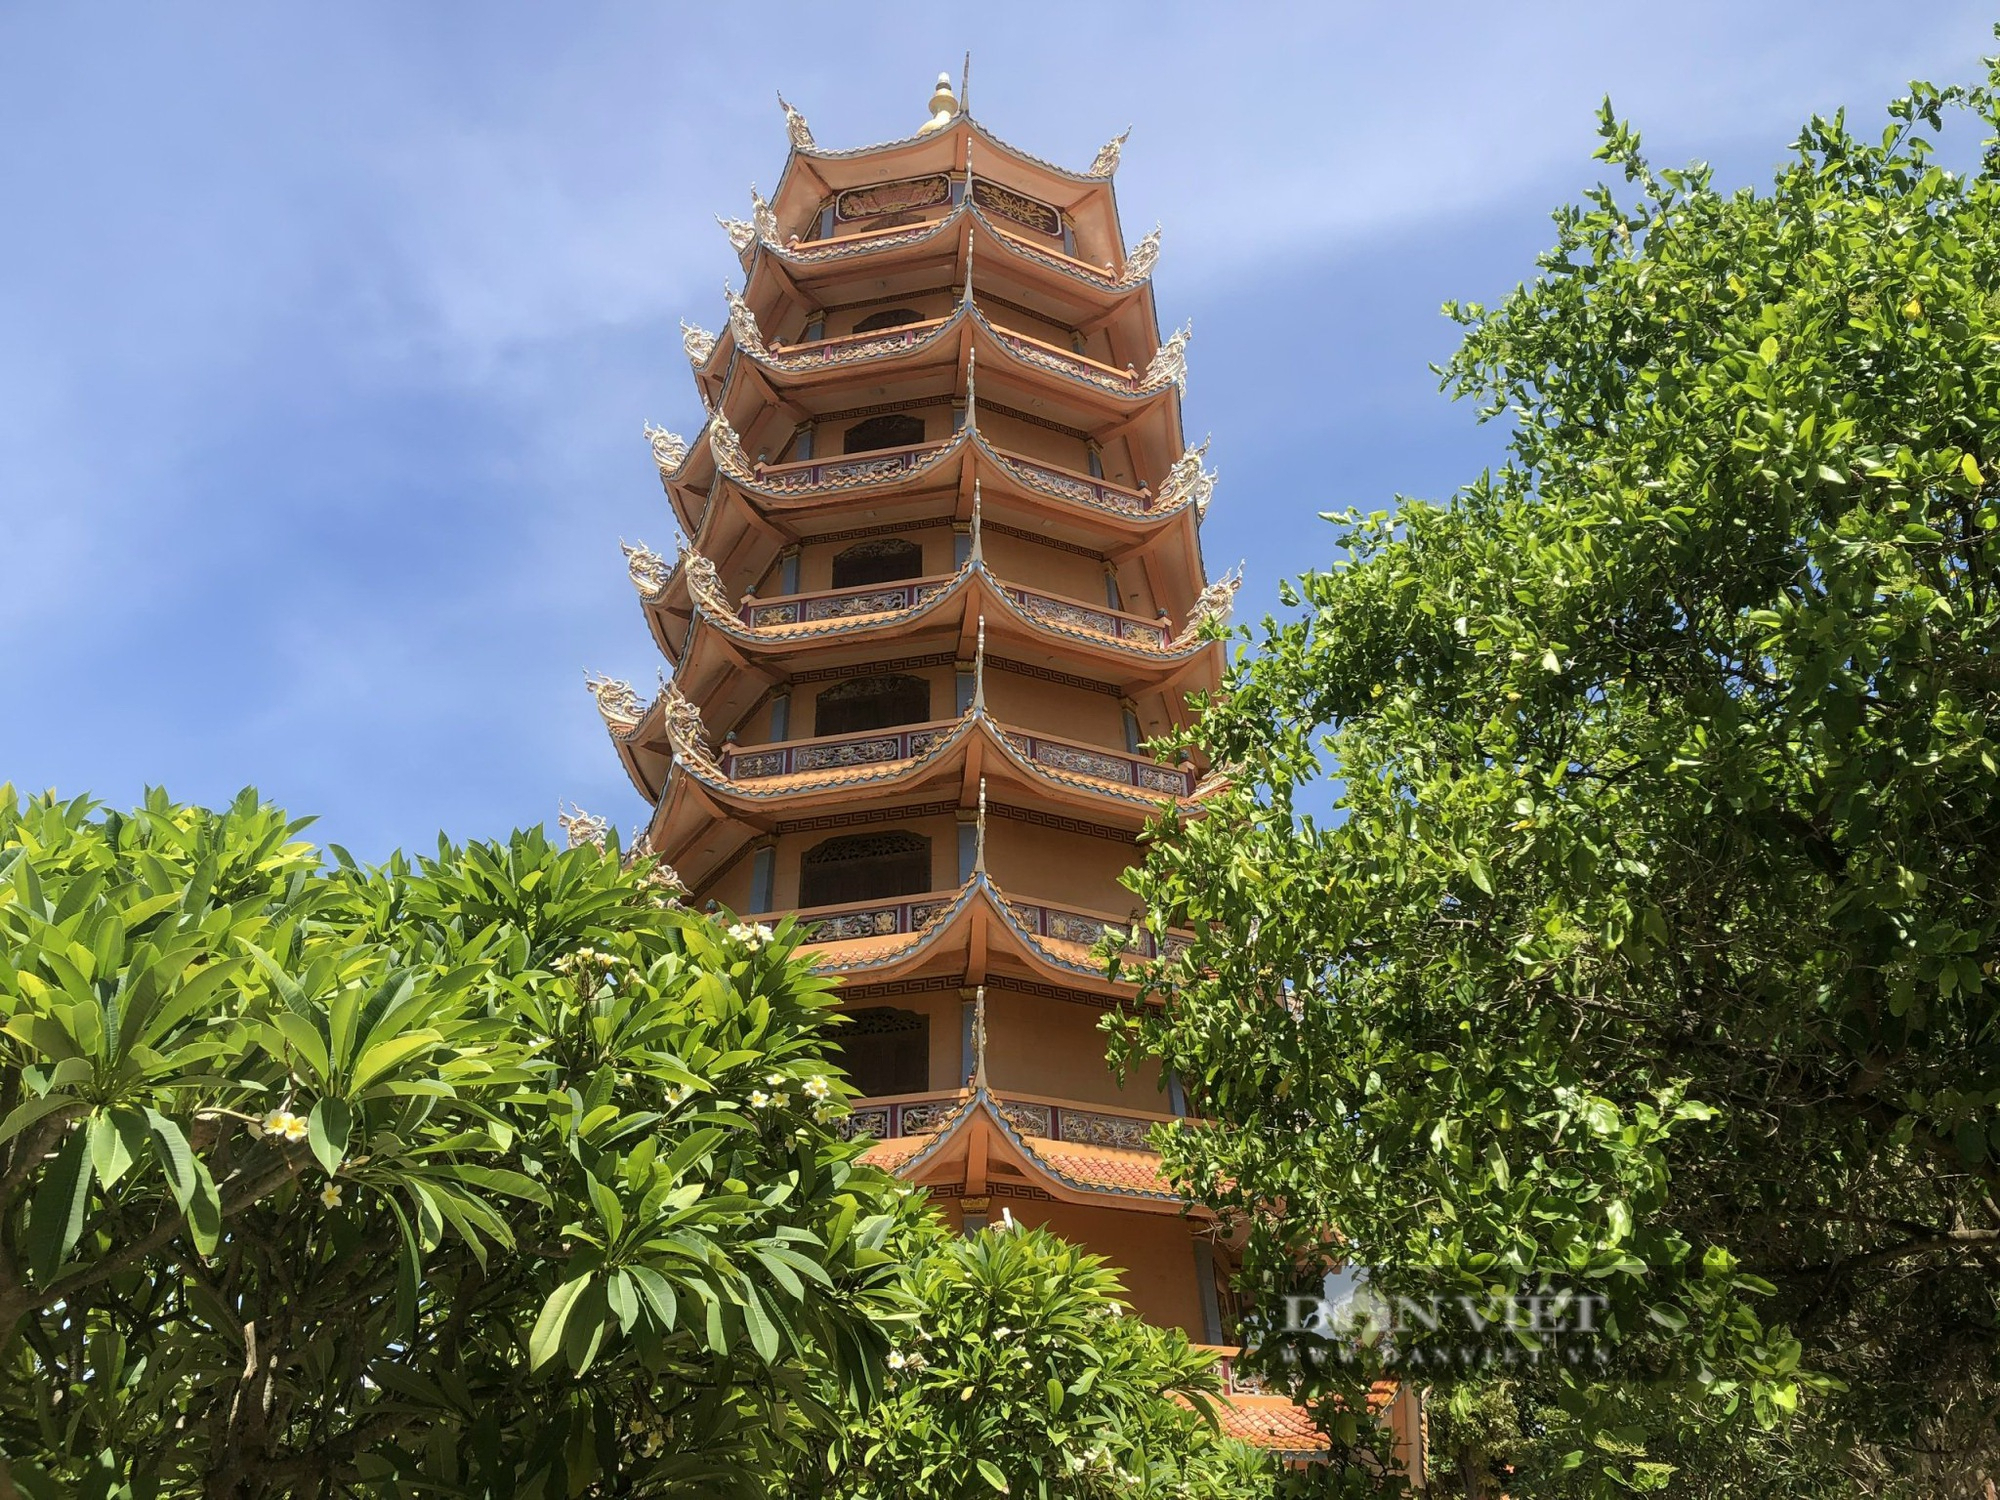 Chùa Linh Quang gần 300 tuổi là&quot;mái nhà&quot; của người dân trên đảo Phú Quý (Bình Thuận) - Ảnh 1.